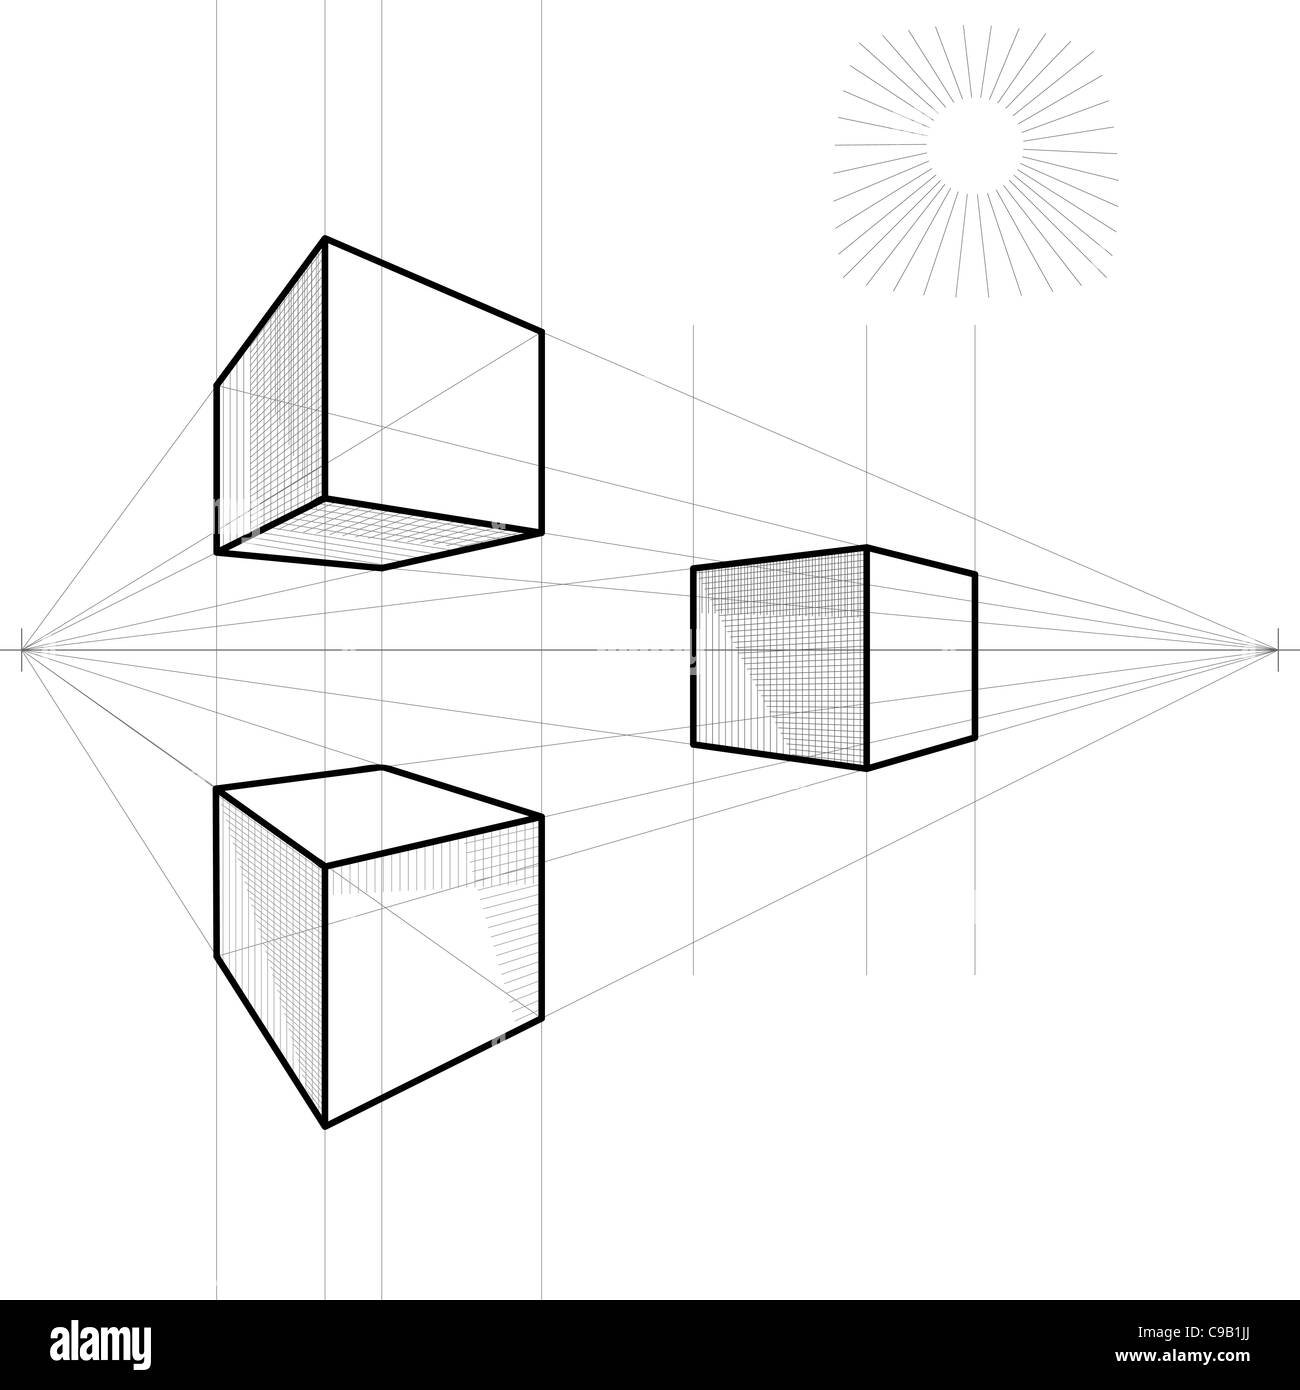 Dibujo de un cubo en perspectiva con dos puntos de fuga Fotografía de stock  - Alamy